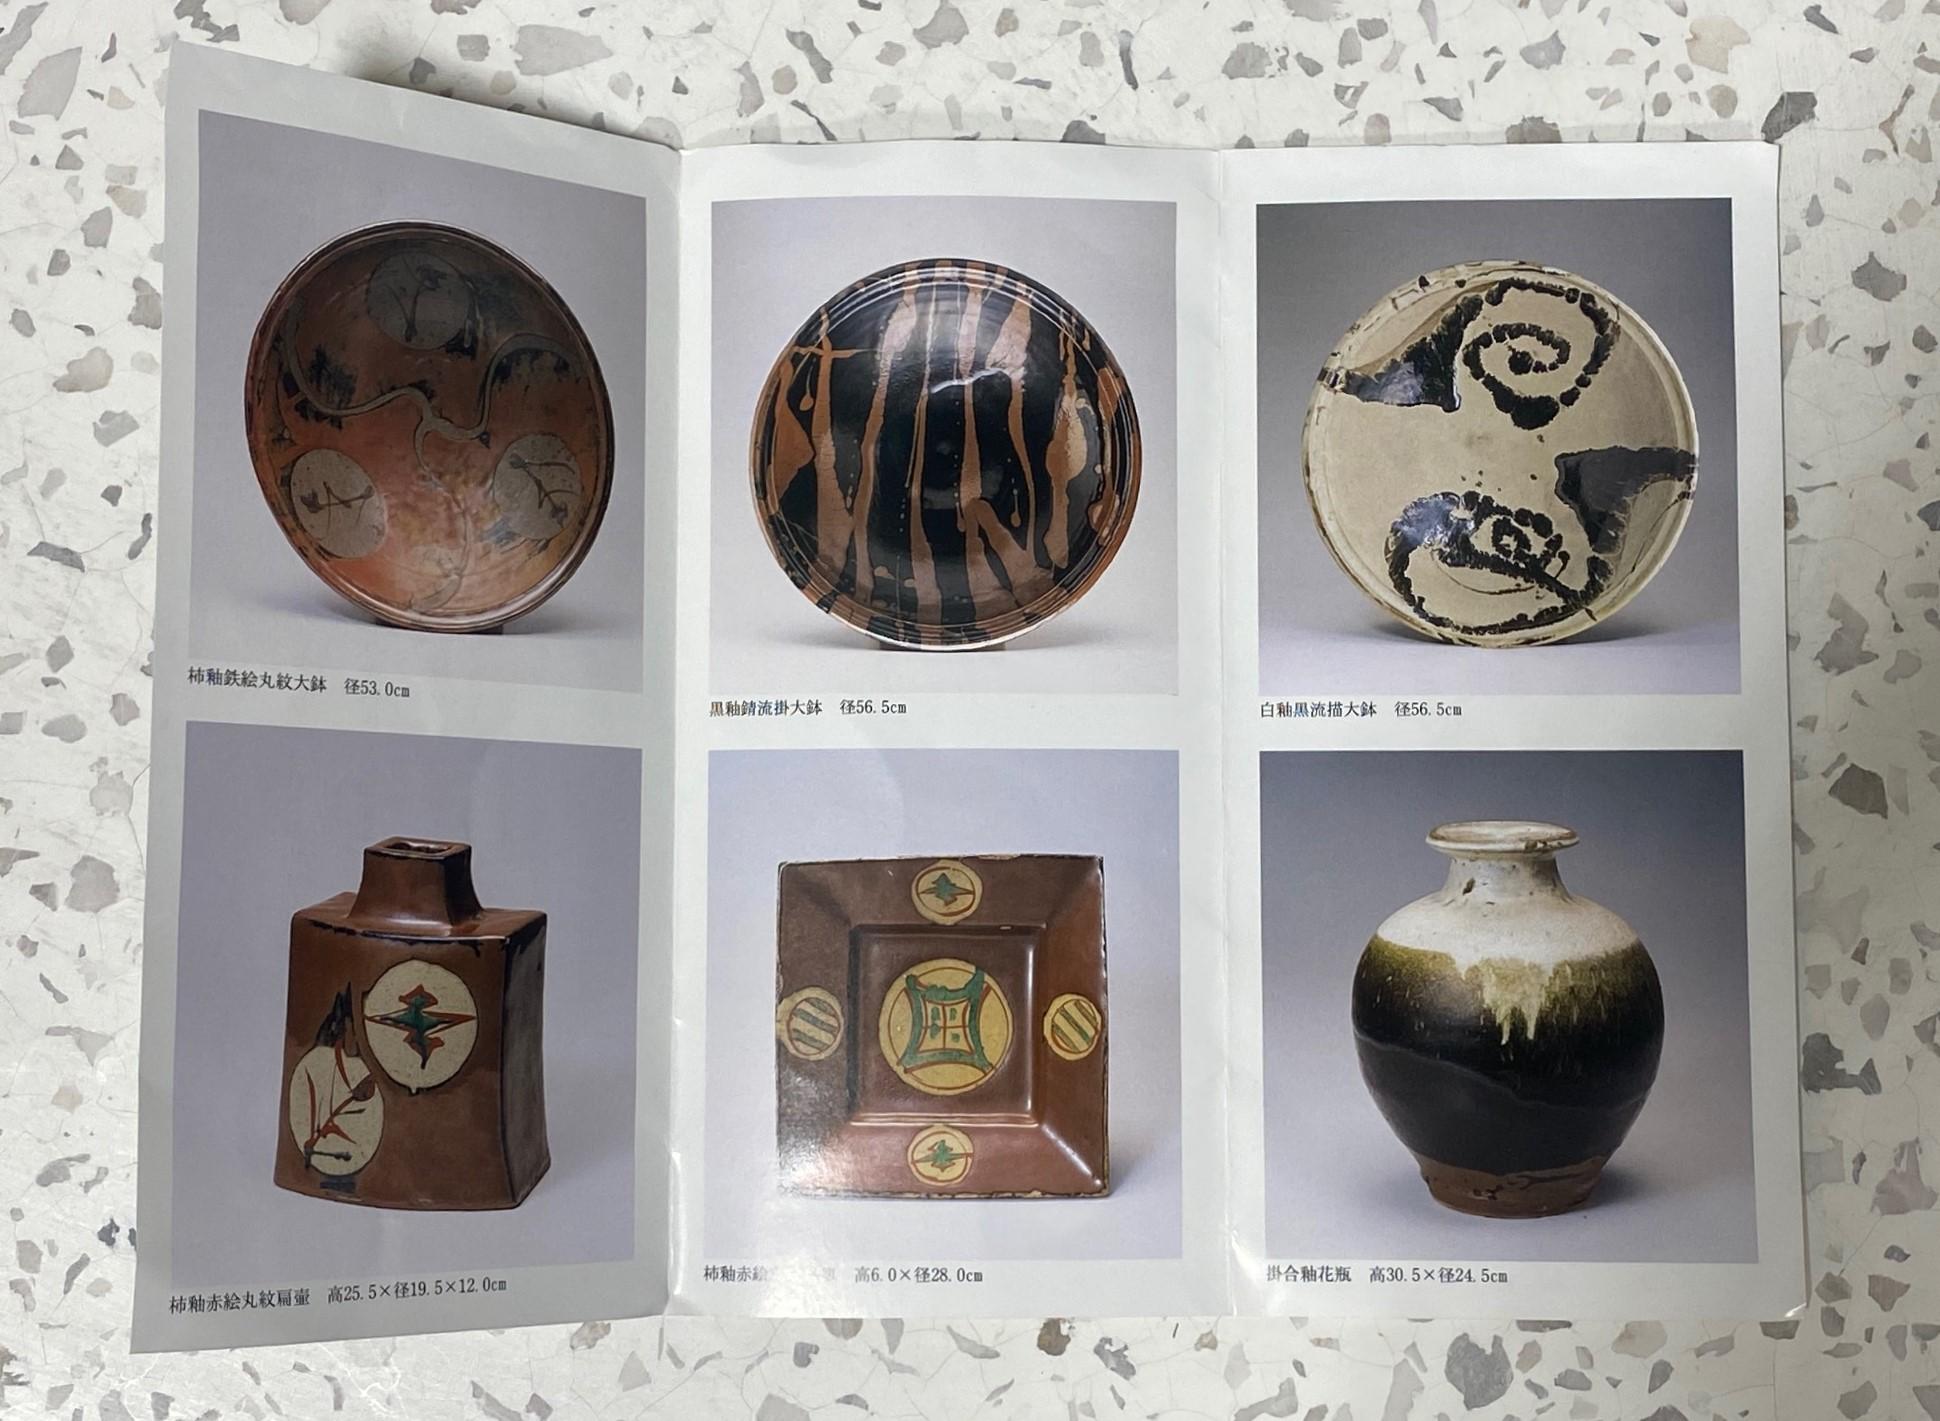 Shoji Hamada Tenmoku Glaze and Kaki Trailing Vase and Original Signed Sealed Box For Sale 8